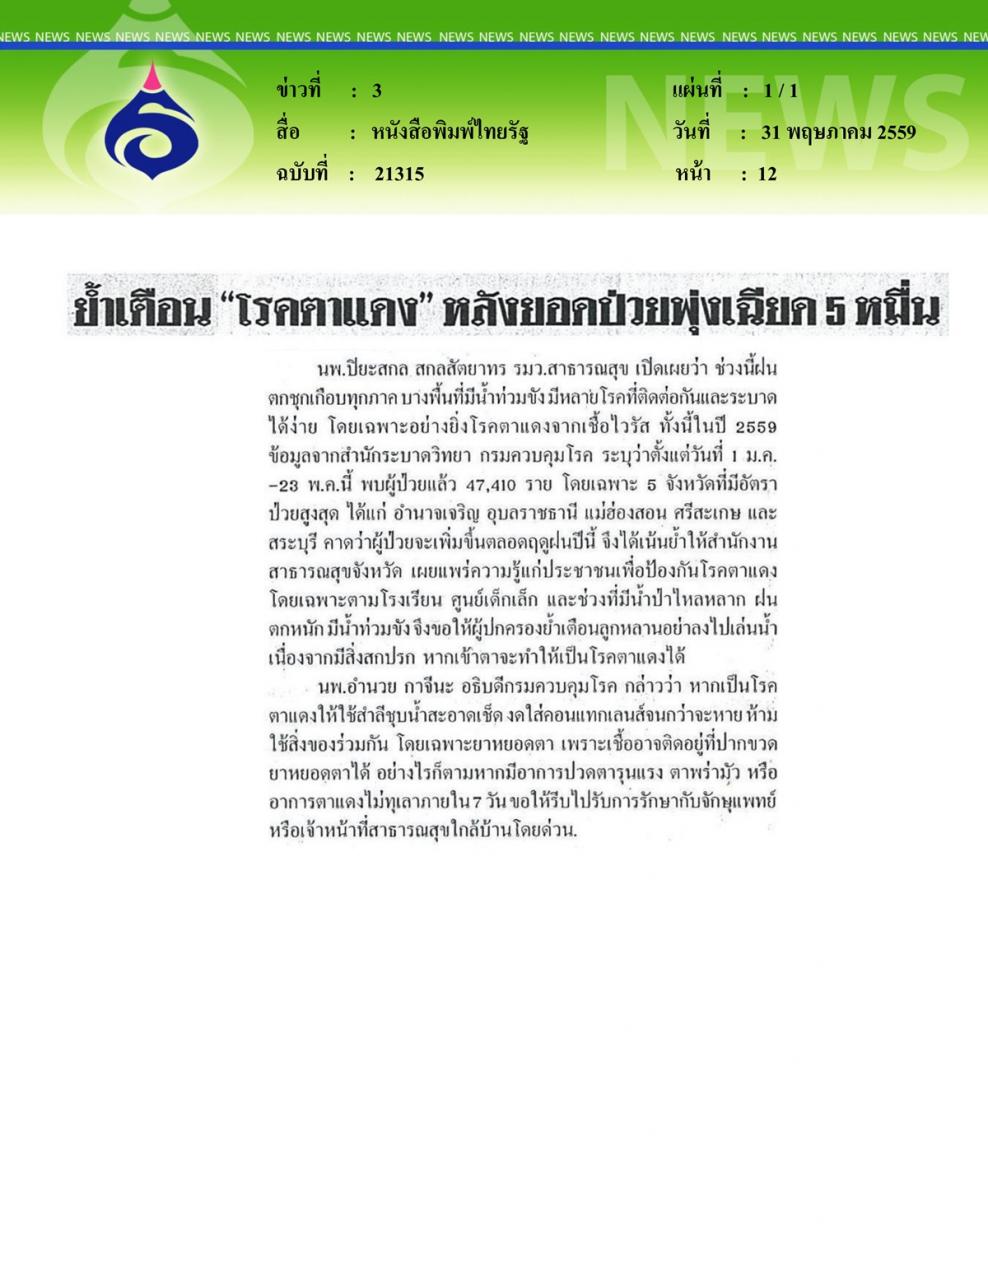 หนังสือพิมพ์ไทยรัฐ ย้ำเตือนโรคตาแดง... หลังยอดป่วยพุ่งเฉียด 5 หมื่น